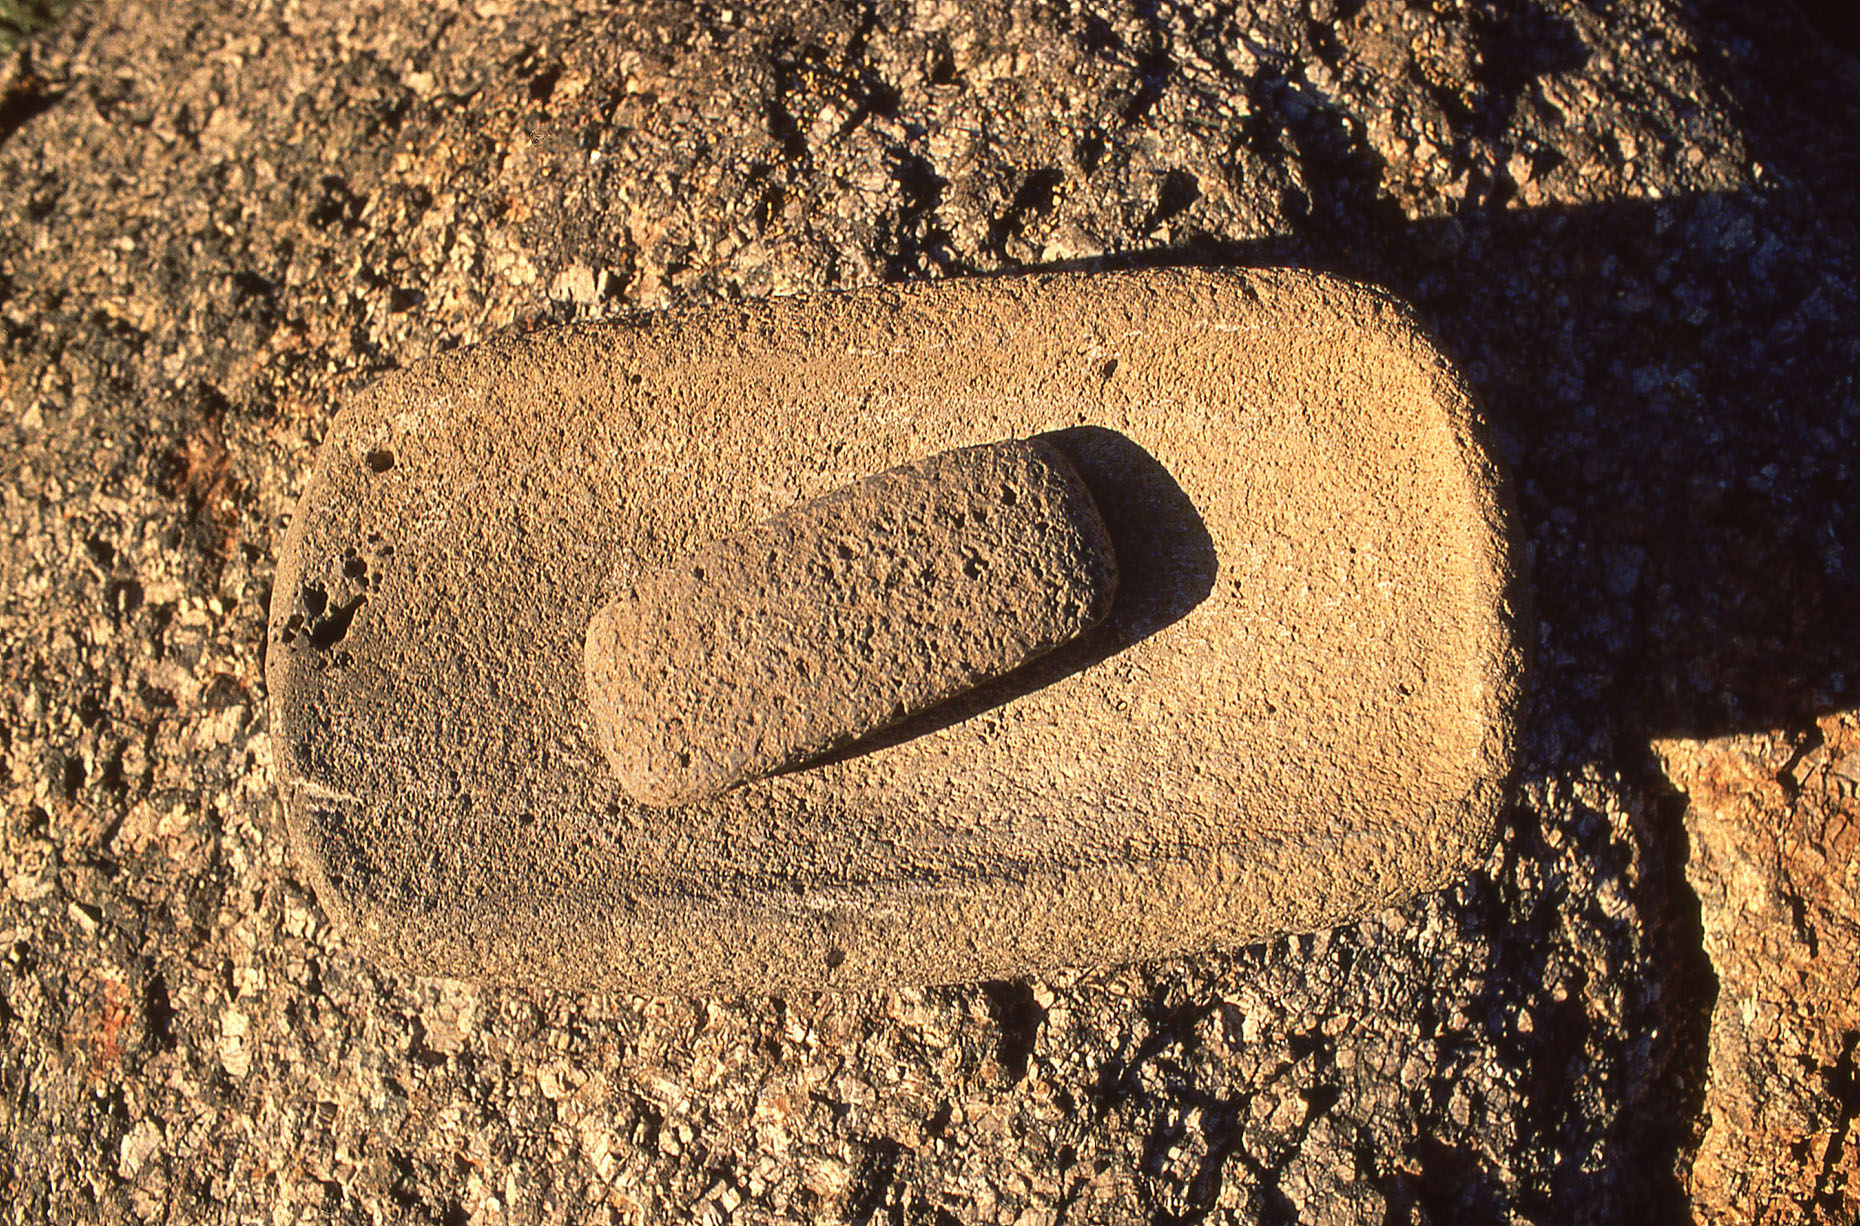 Hohokam mano and metate, John Annerino, Sonoran Desert, AZ, Hohokam seed grinding stones